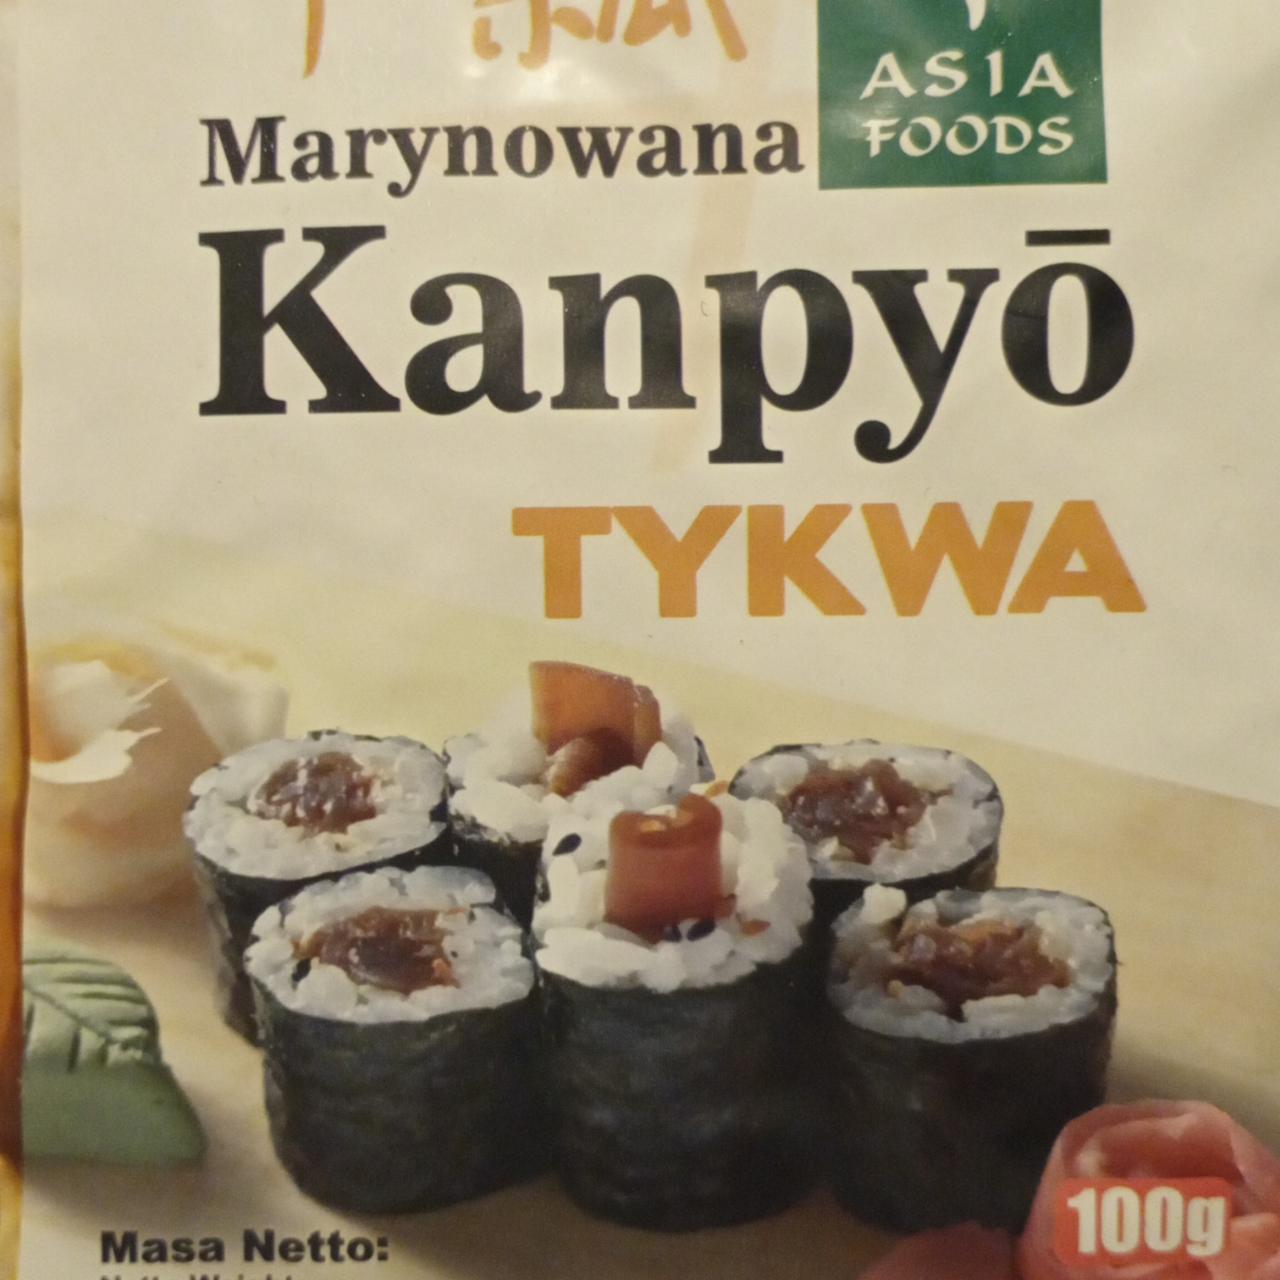 Zdjęcia - Kanpyo Tykwa Marynowana Asia Foods